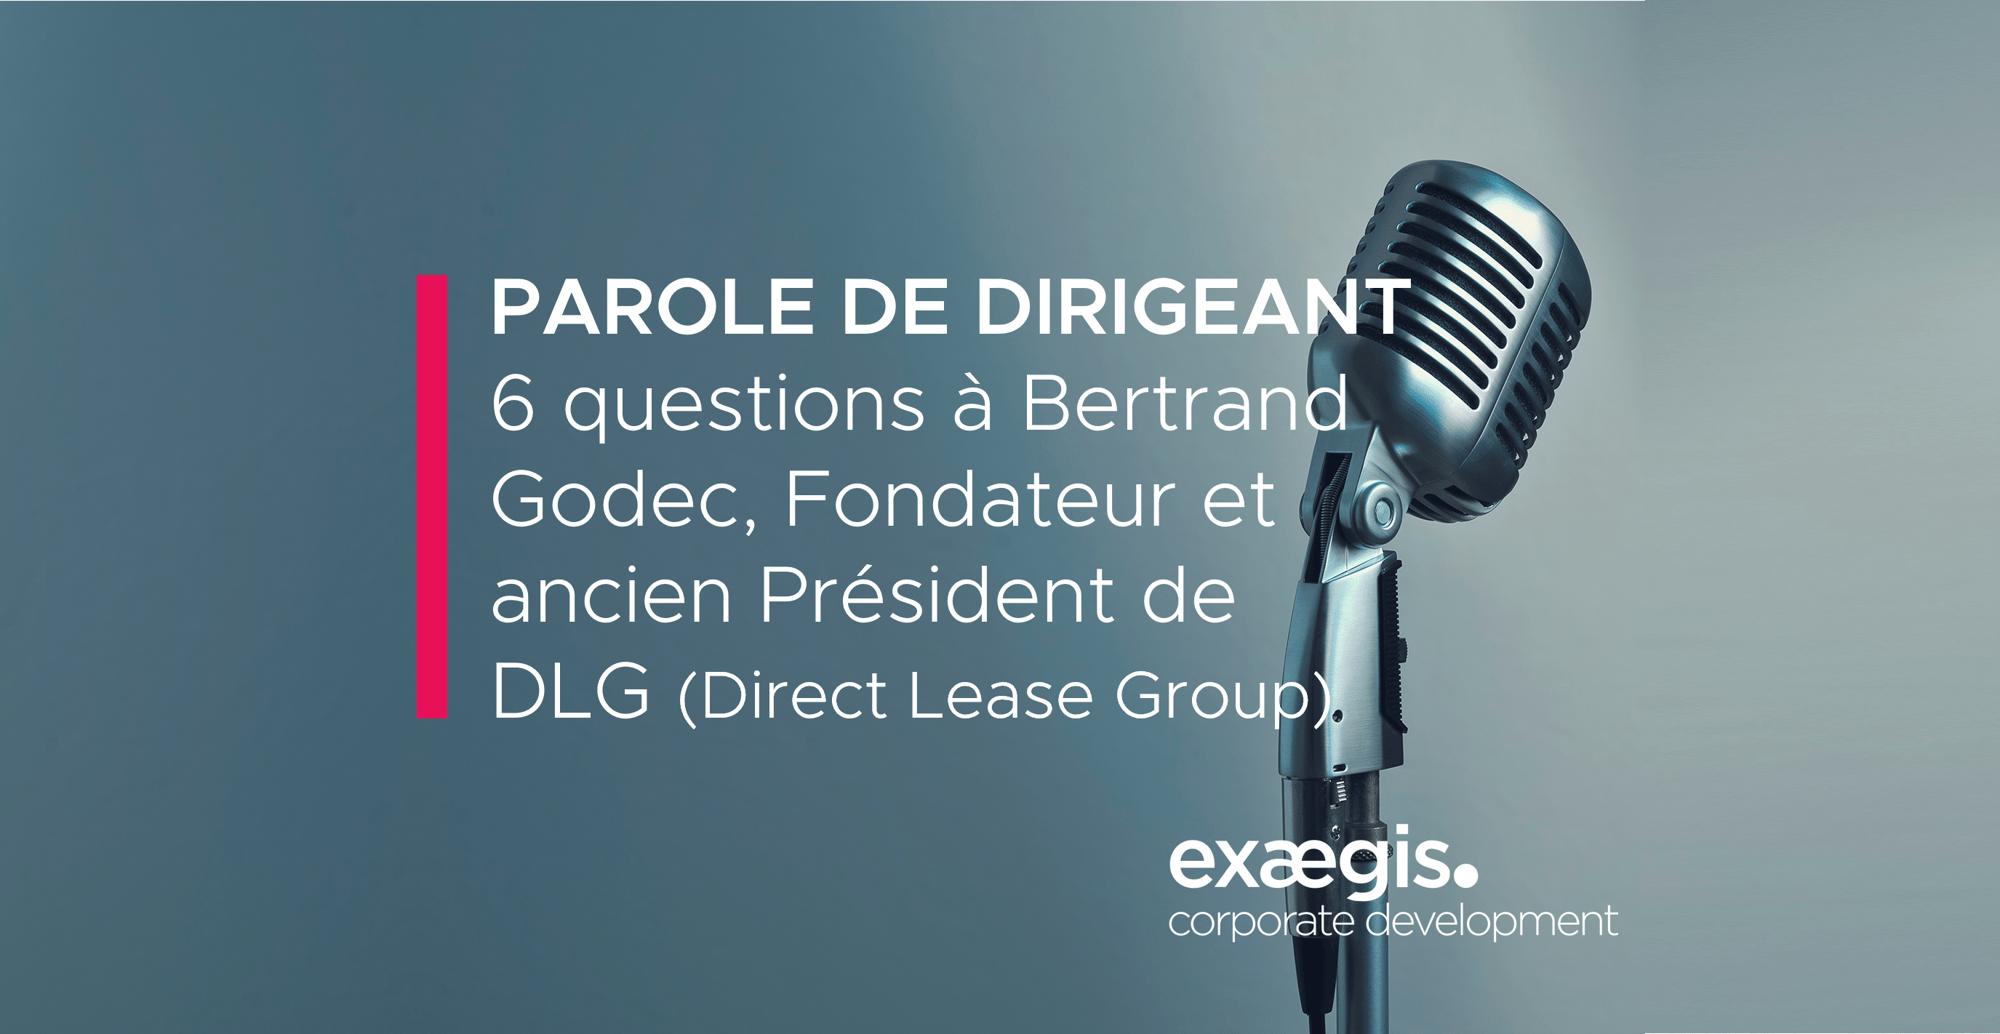 6 questions à Bertrand Godec, Fondateur et ancien Président de DLG (Direct Lease Group)